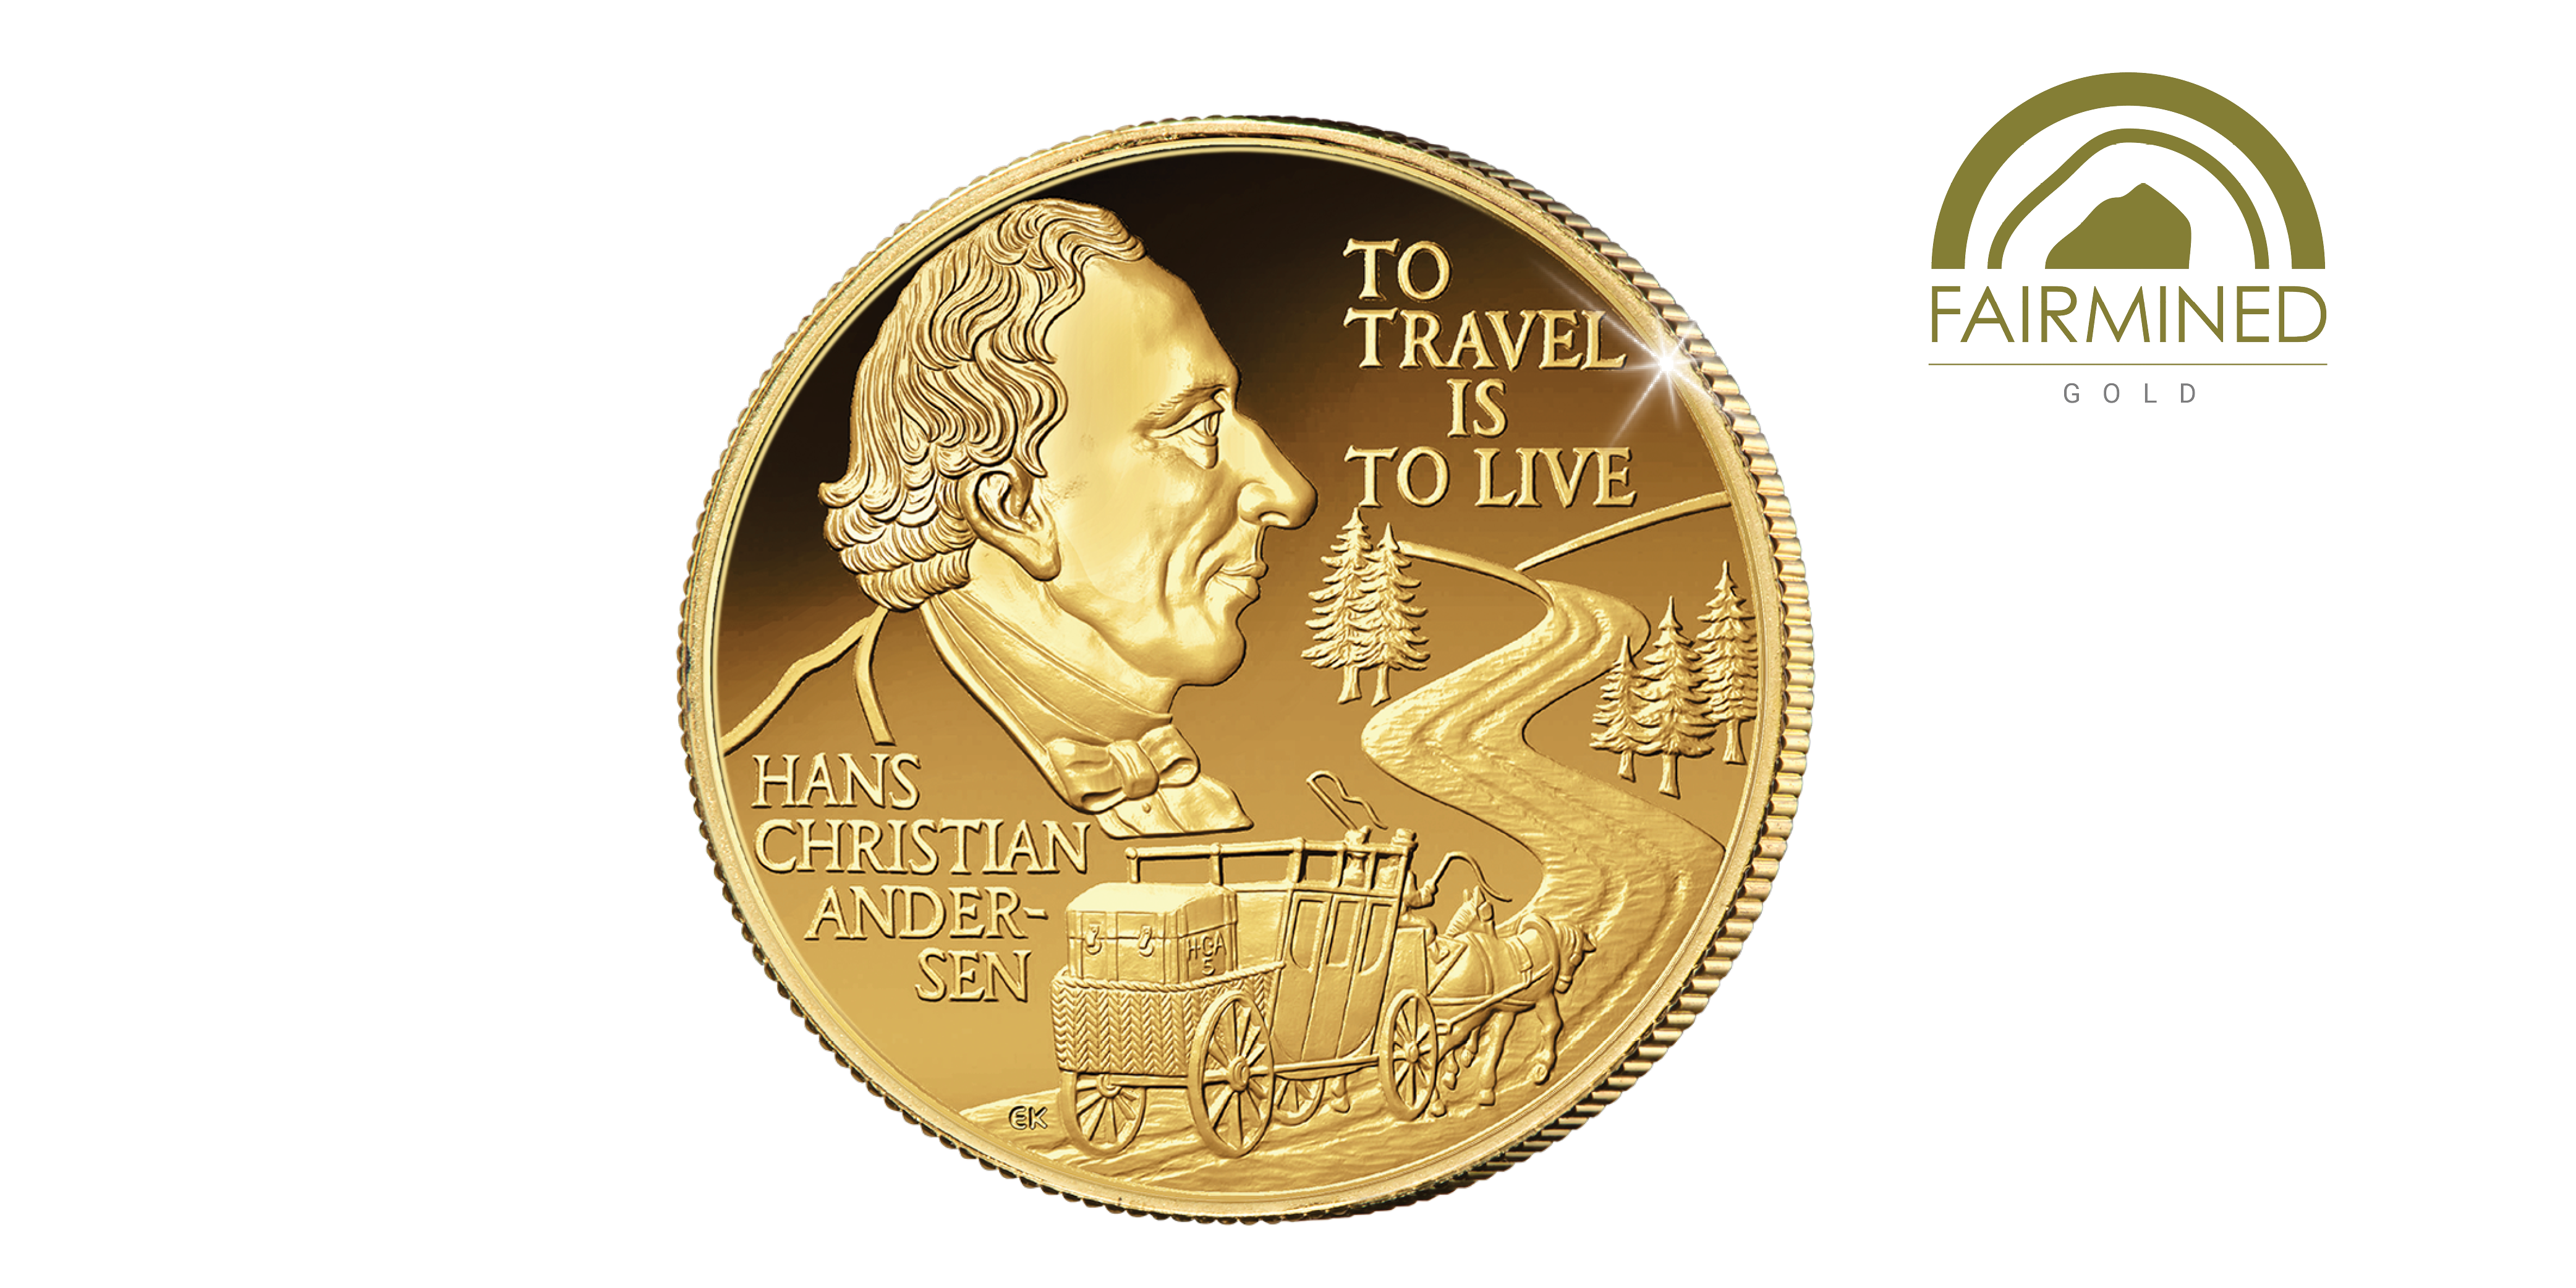   Den første Fairmined guldmønt med motiv af H.C. Andersen nogensinde!